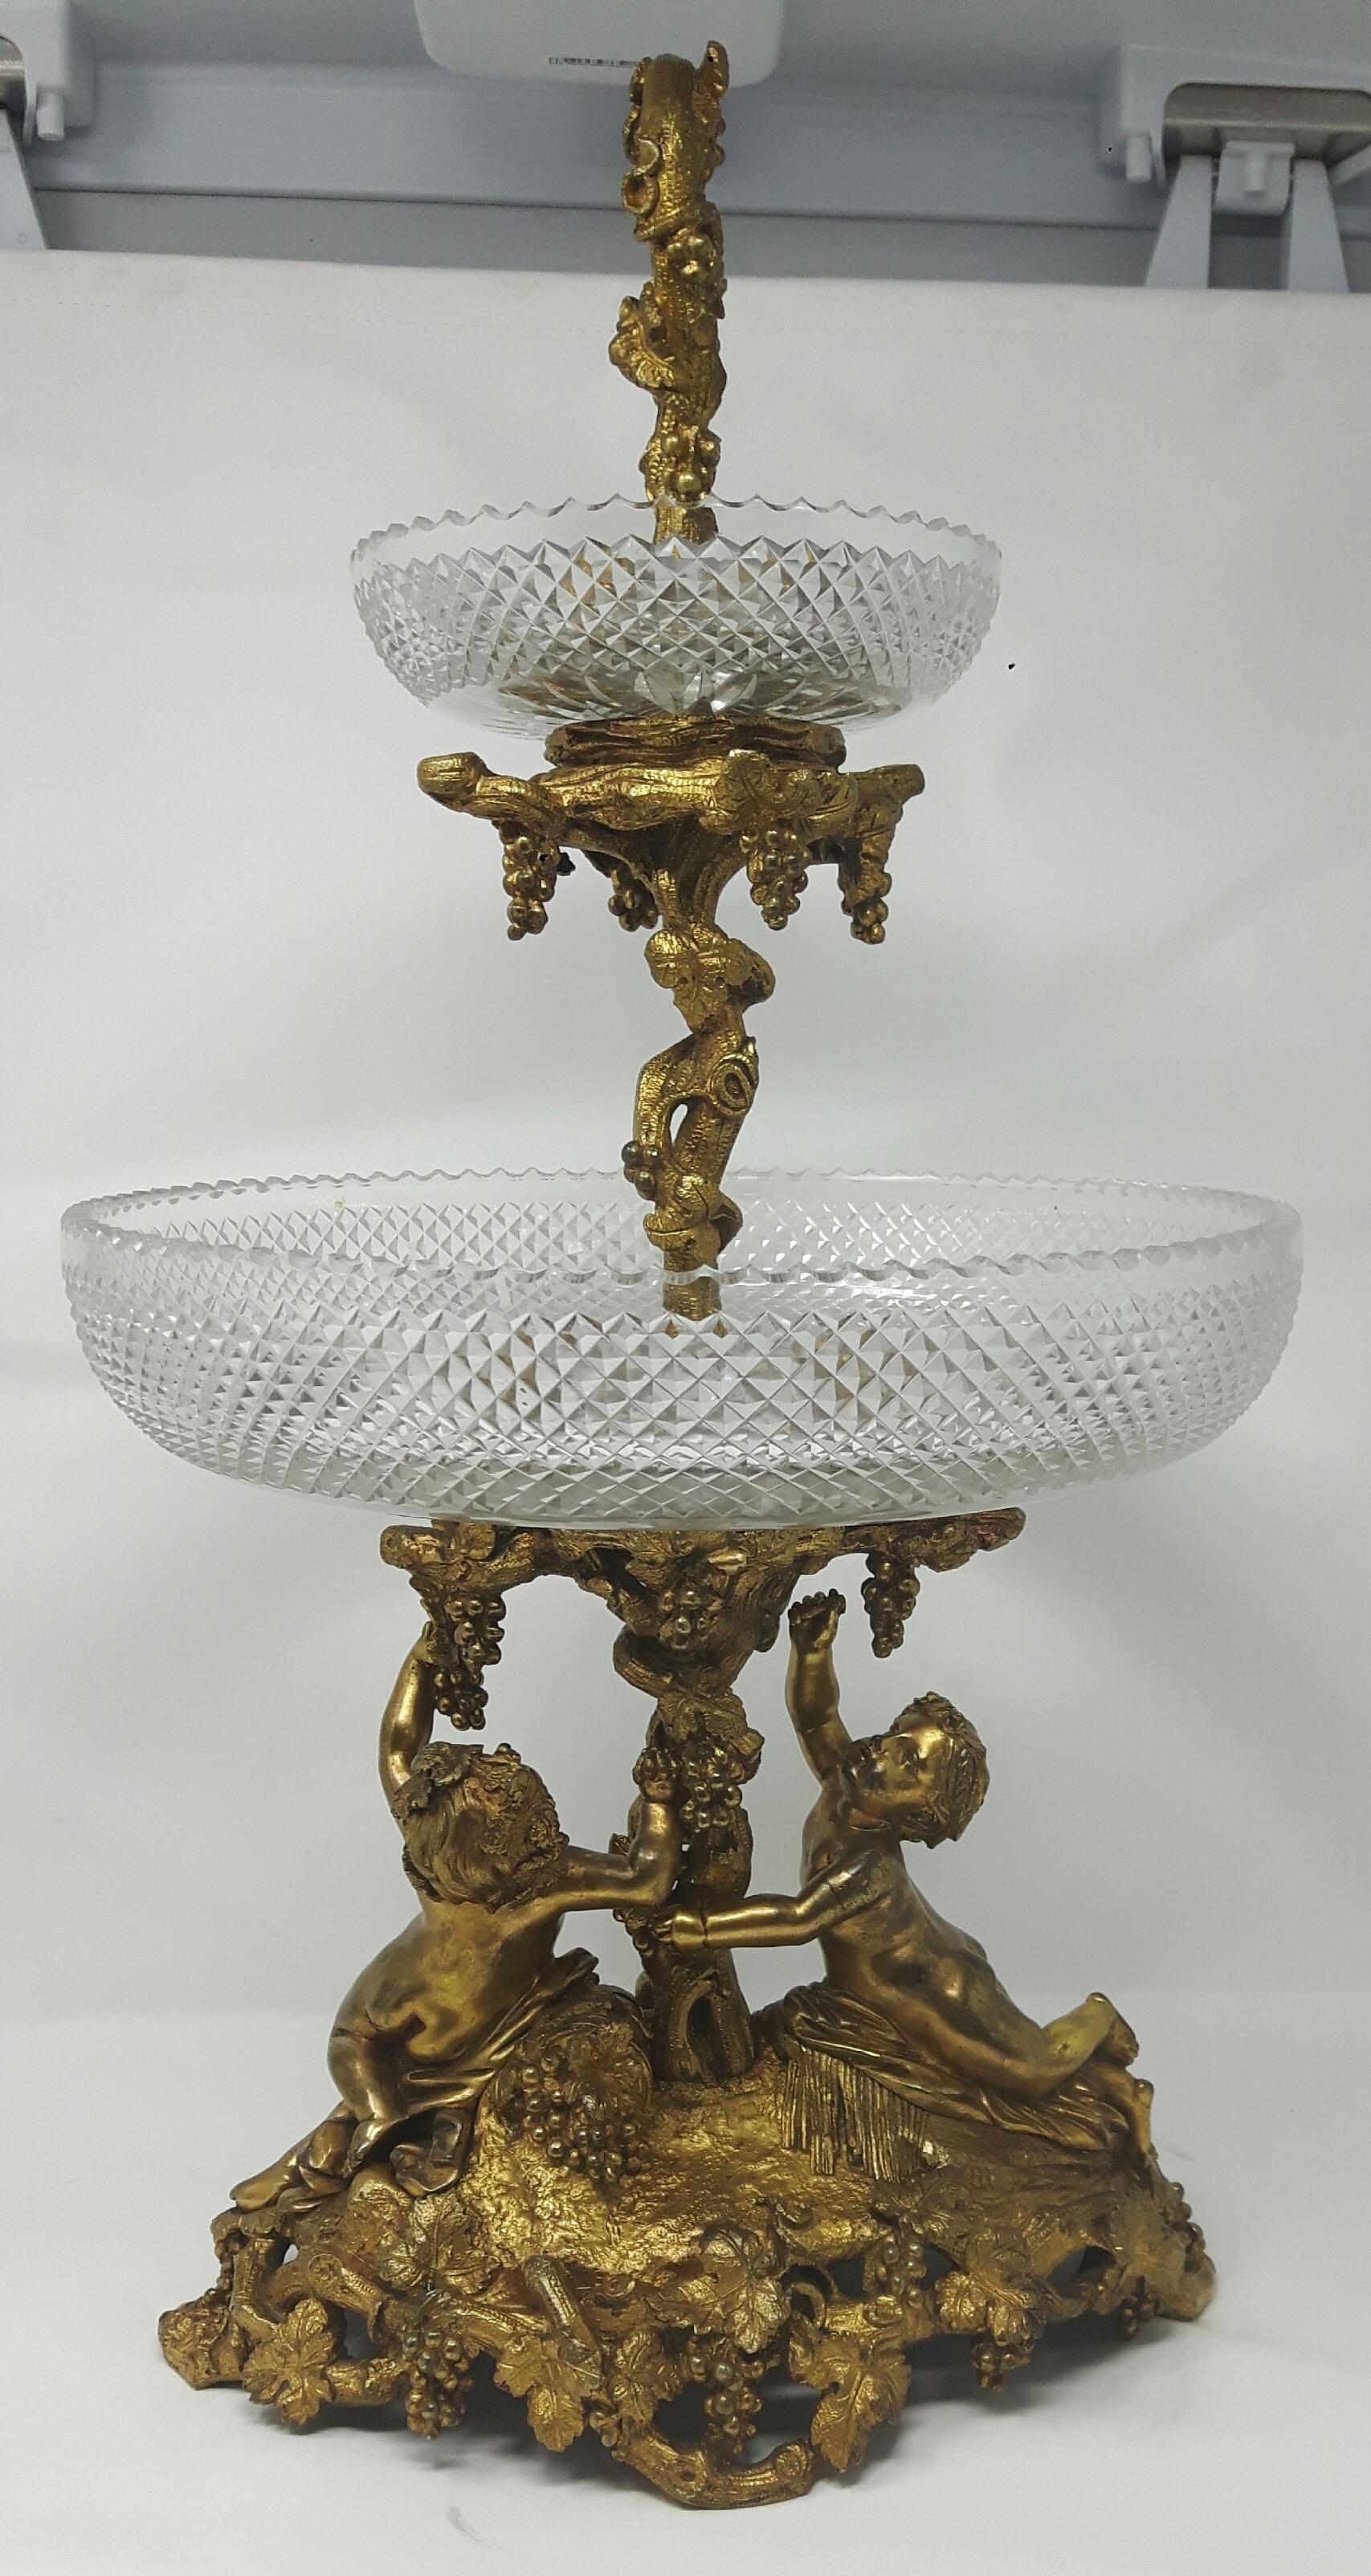 Ein Tafelaufsatz aus vergoldeter Bronze, mit zwei scharf geschnittenen Schalen auf einer Fruchtranke, die von zwei Putten auf einem ovalen Sockel getragen wird.